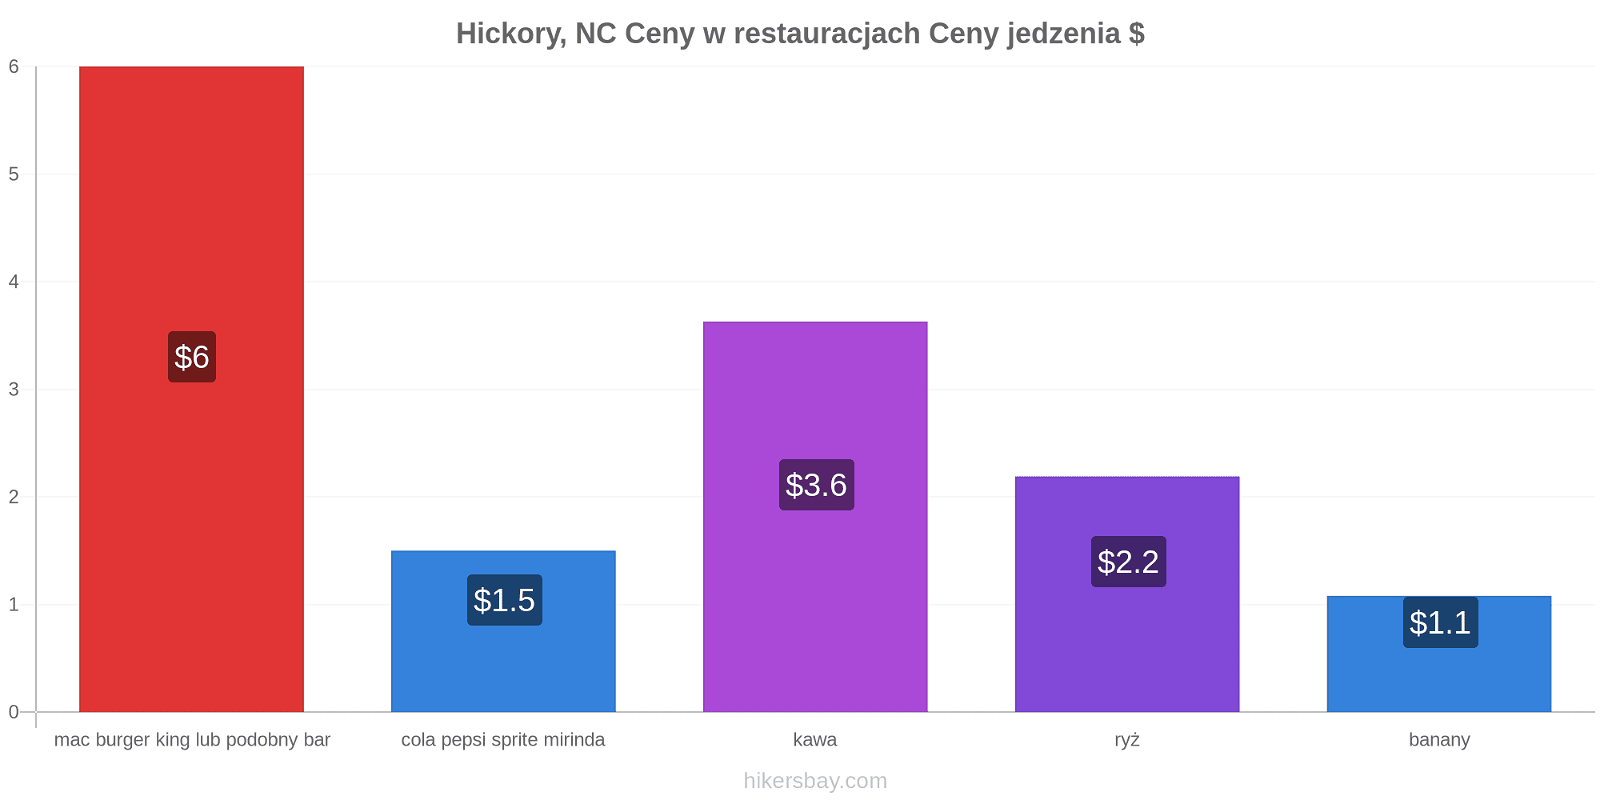 Hickory, NC zmiany cen hikersbay.com